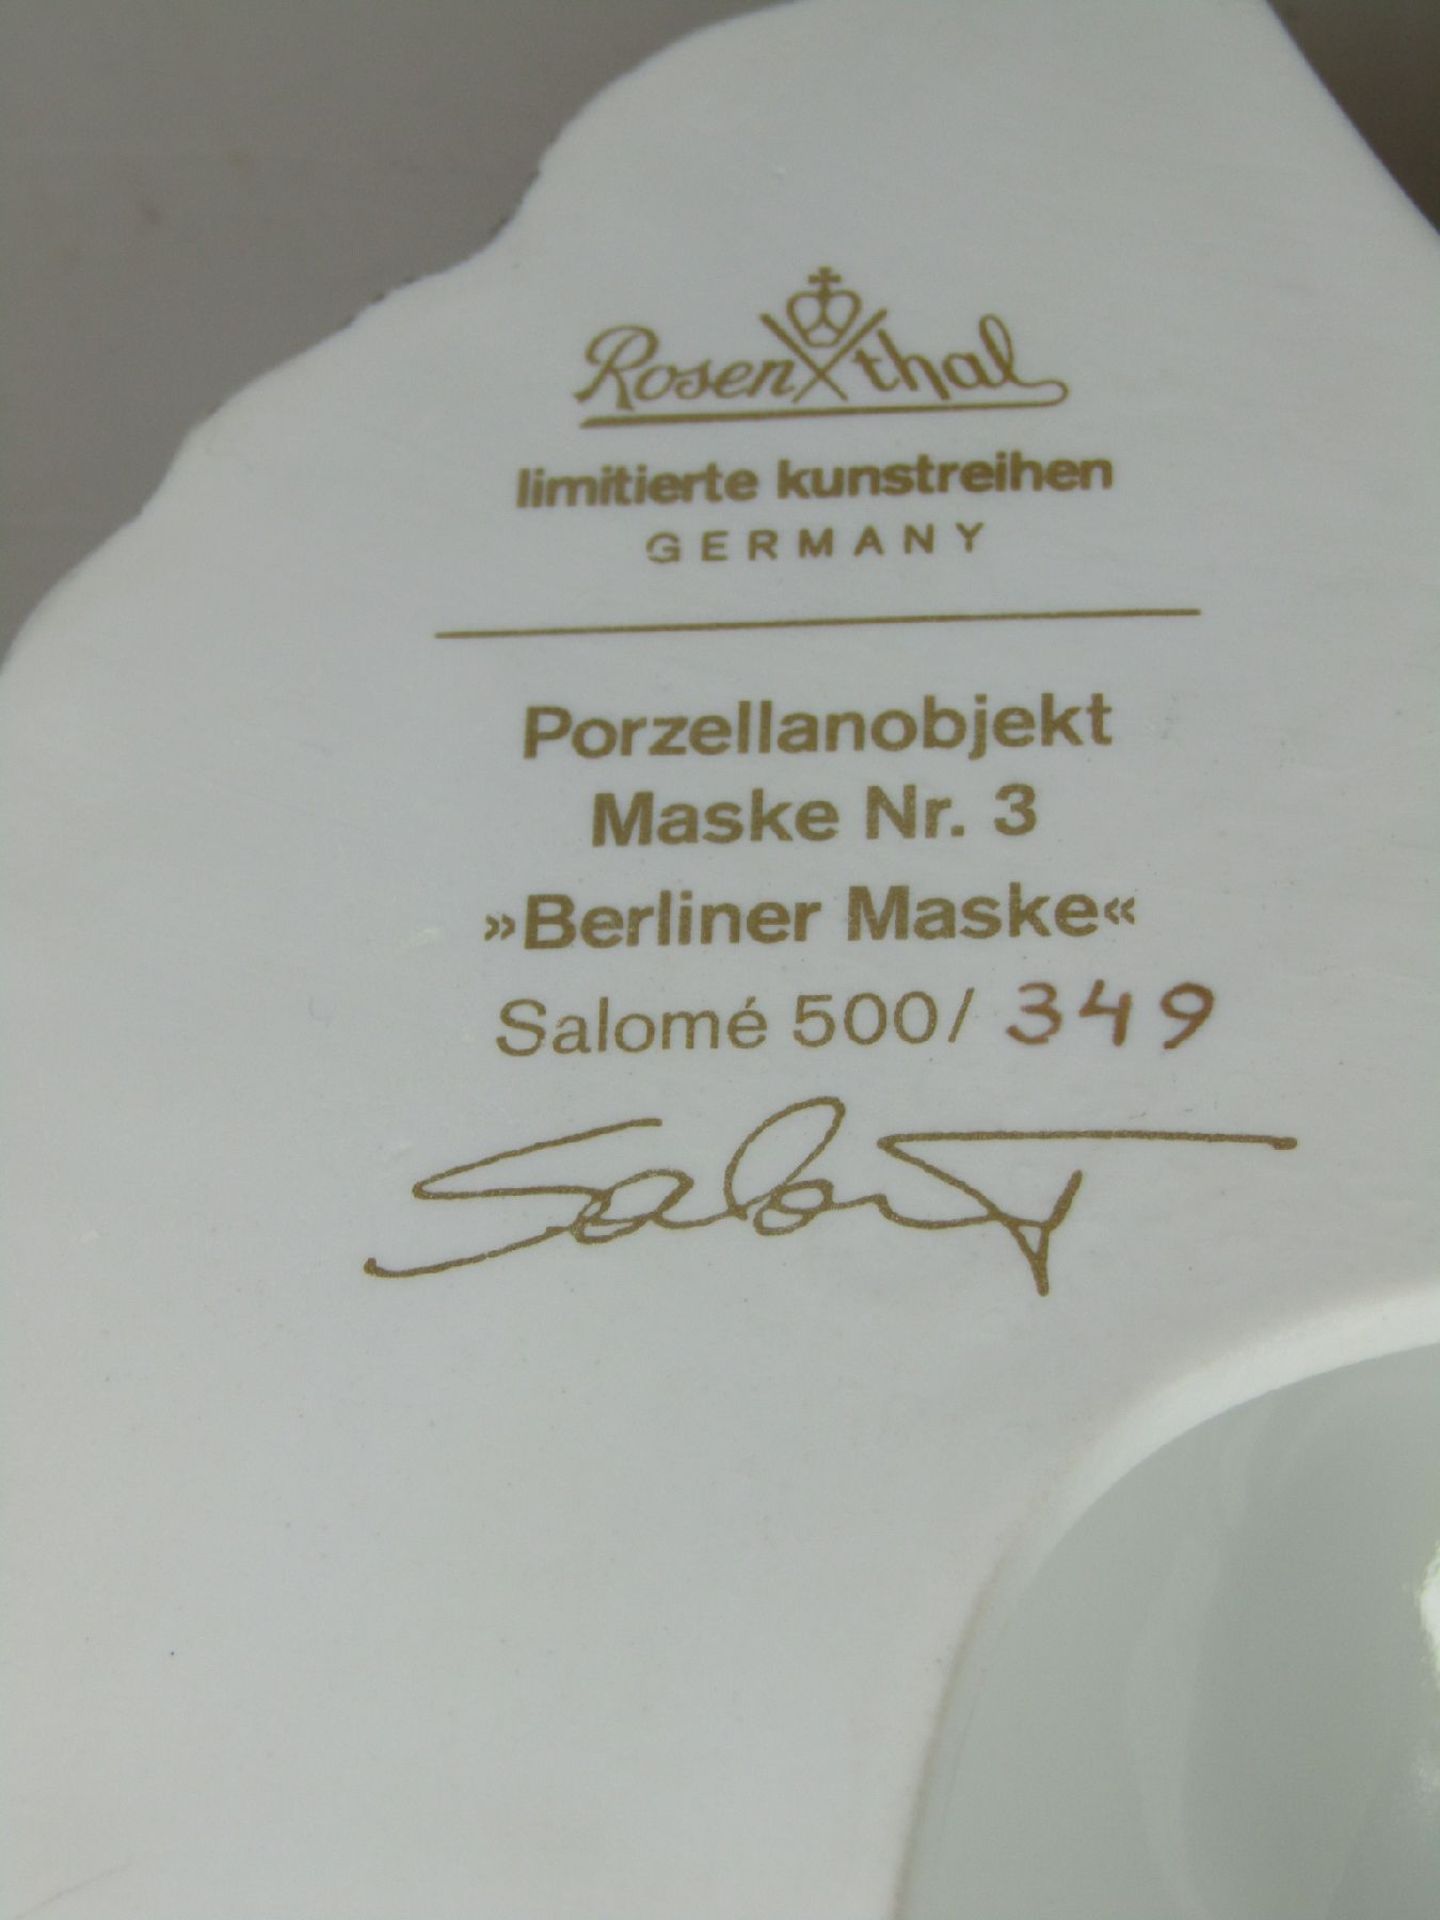 Porzellanobjekt Rosenthal "Berliner Maske" von Salomé, limitierte Kunstreihen, signiert und num. - Bild 5 aus 5